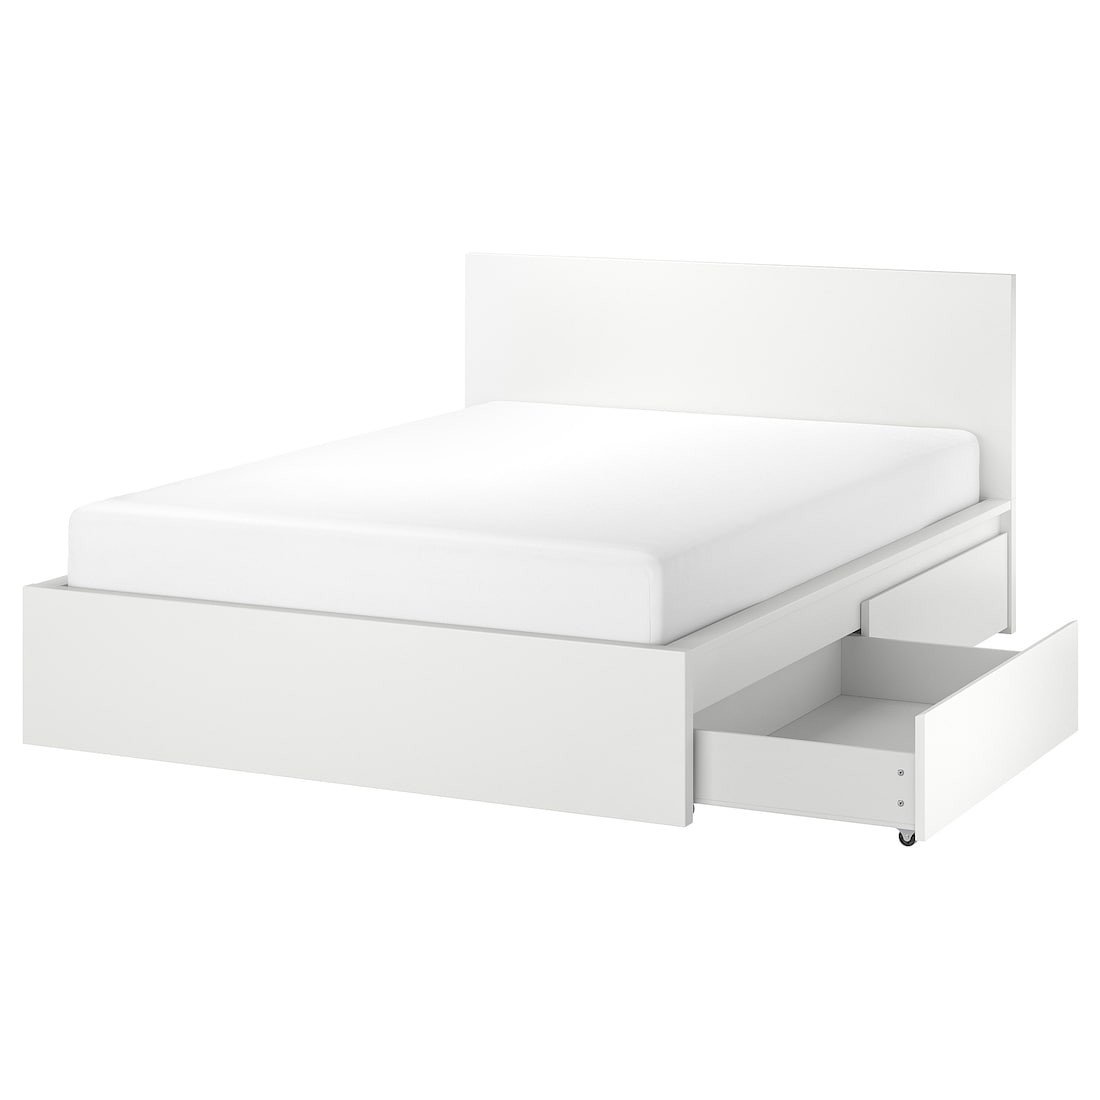 MALM МАЛЬМ Кровать двуспальная с 2 ящиками, белый / Lönset, 180x200 см